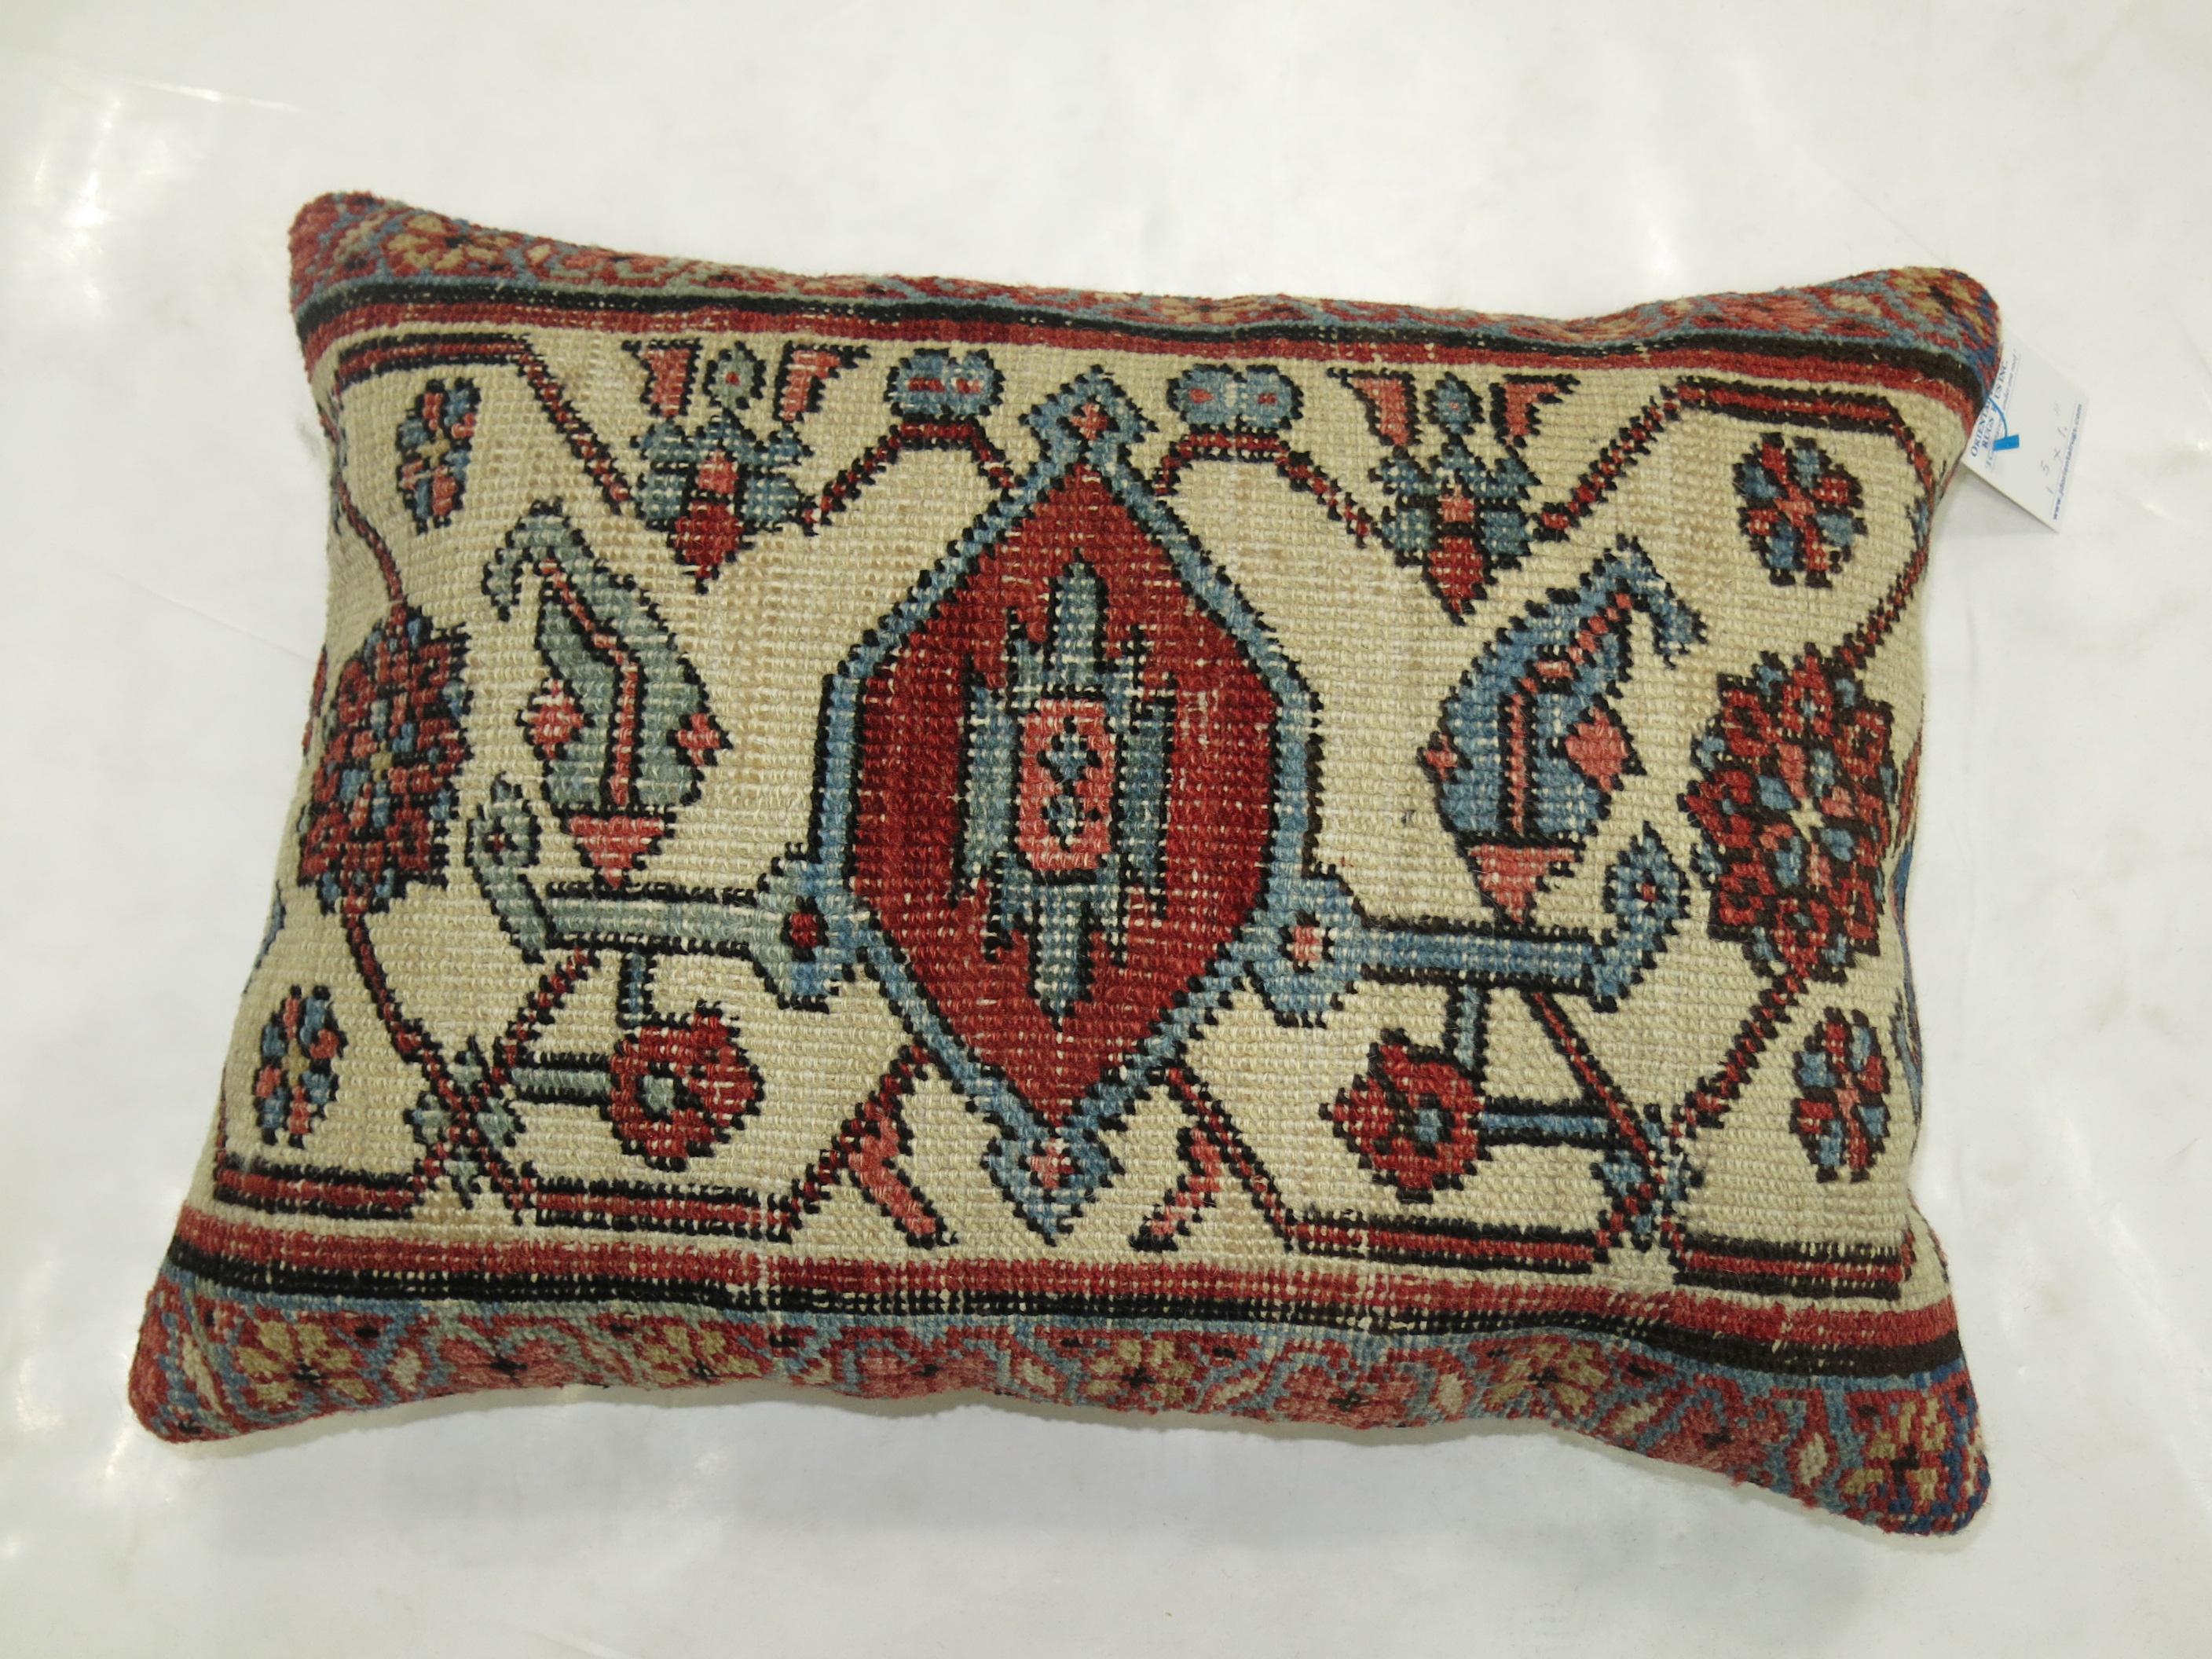 Kissen aus einem hochwertigen persischen Serapi-Teppich. Elfenbeinfarbenes Medaillon mit ziegelroten, blauen und braunen Akzenten

Maße: 17